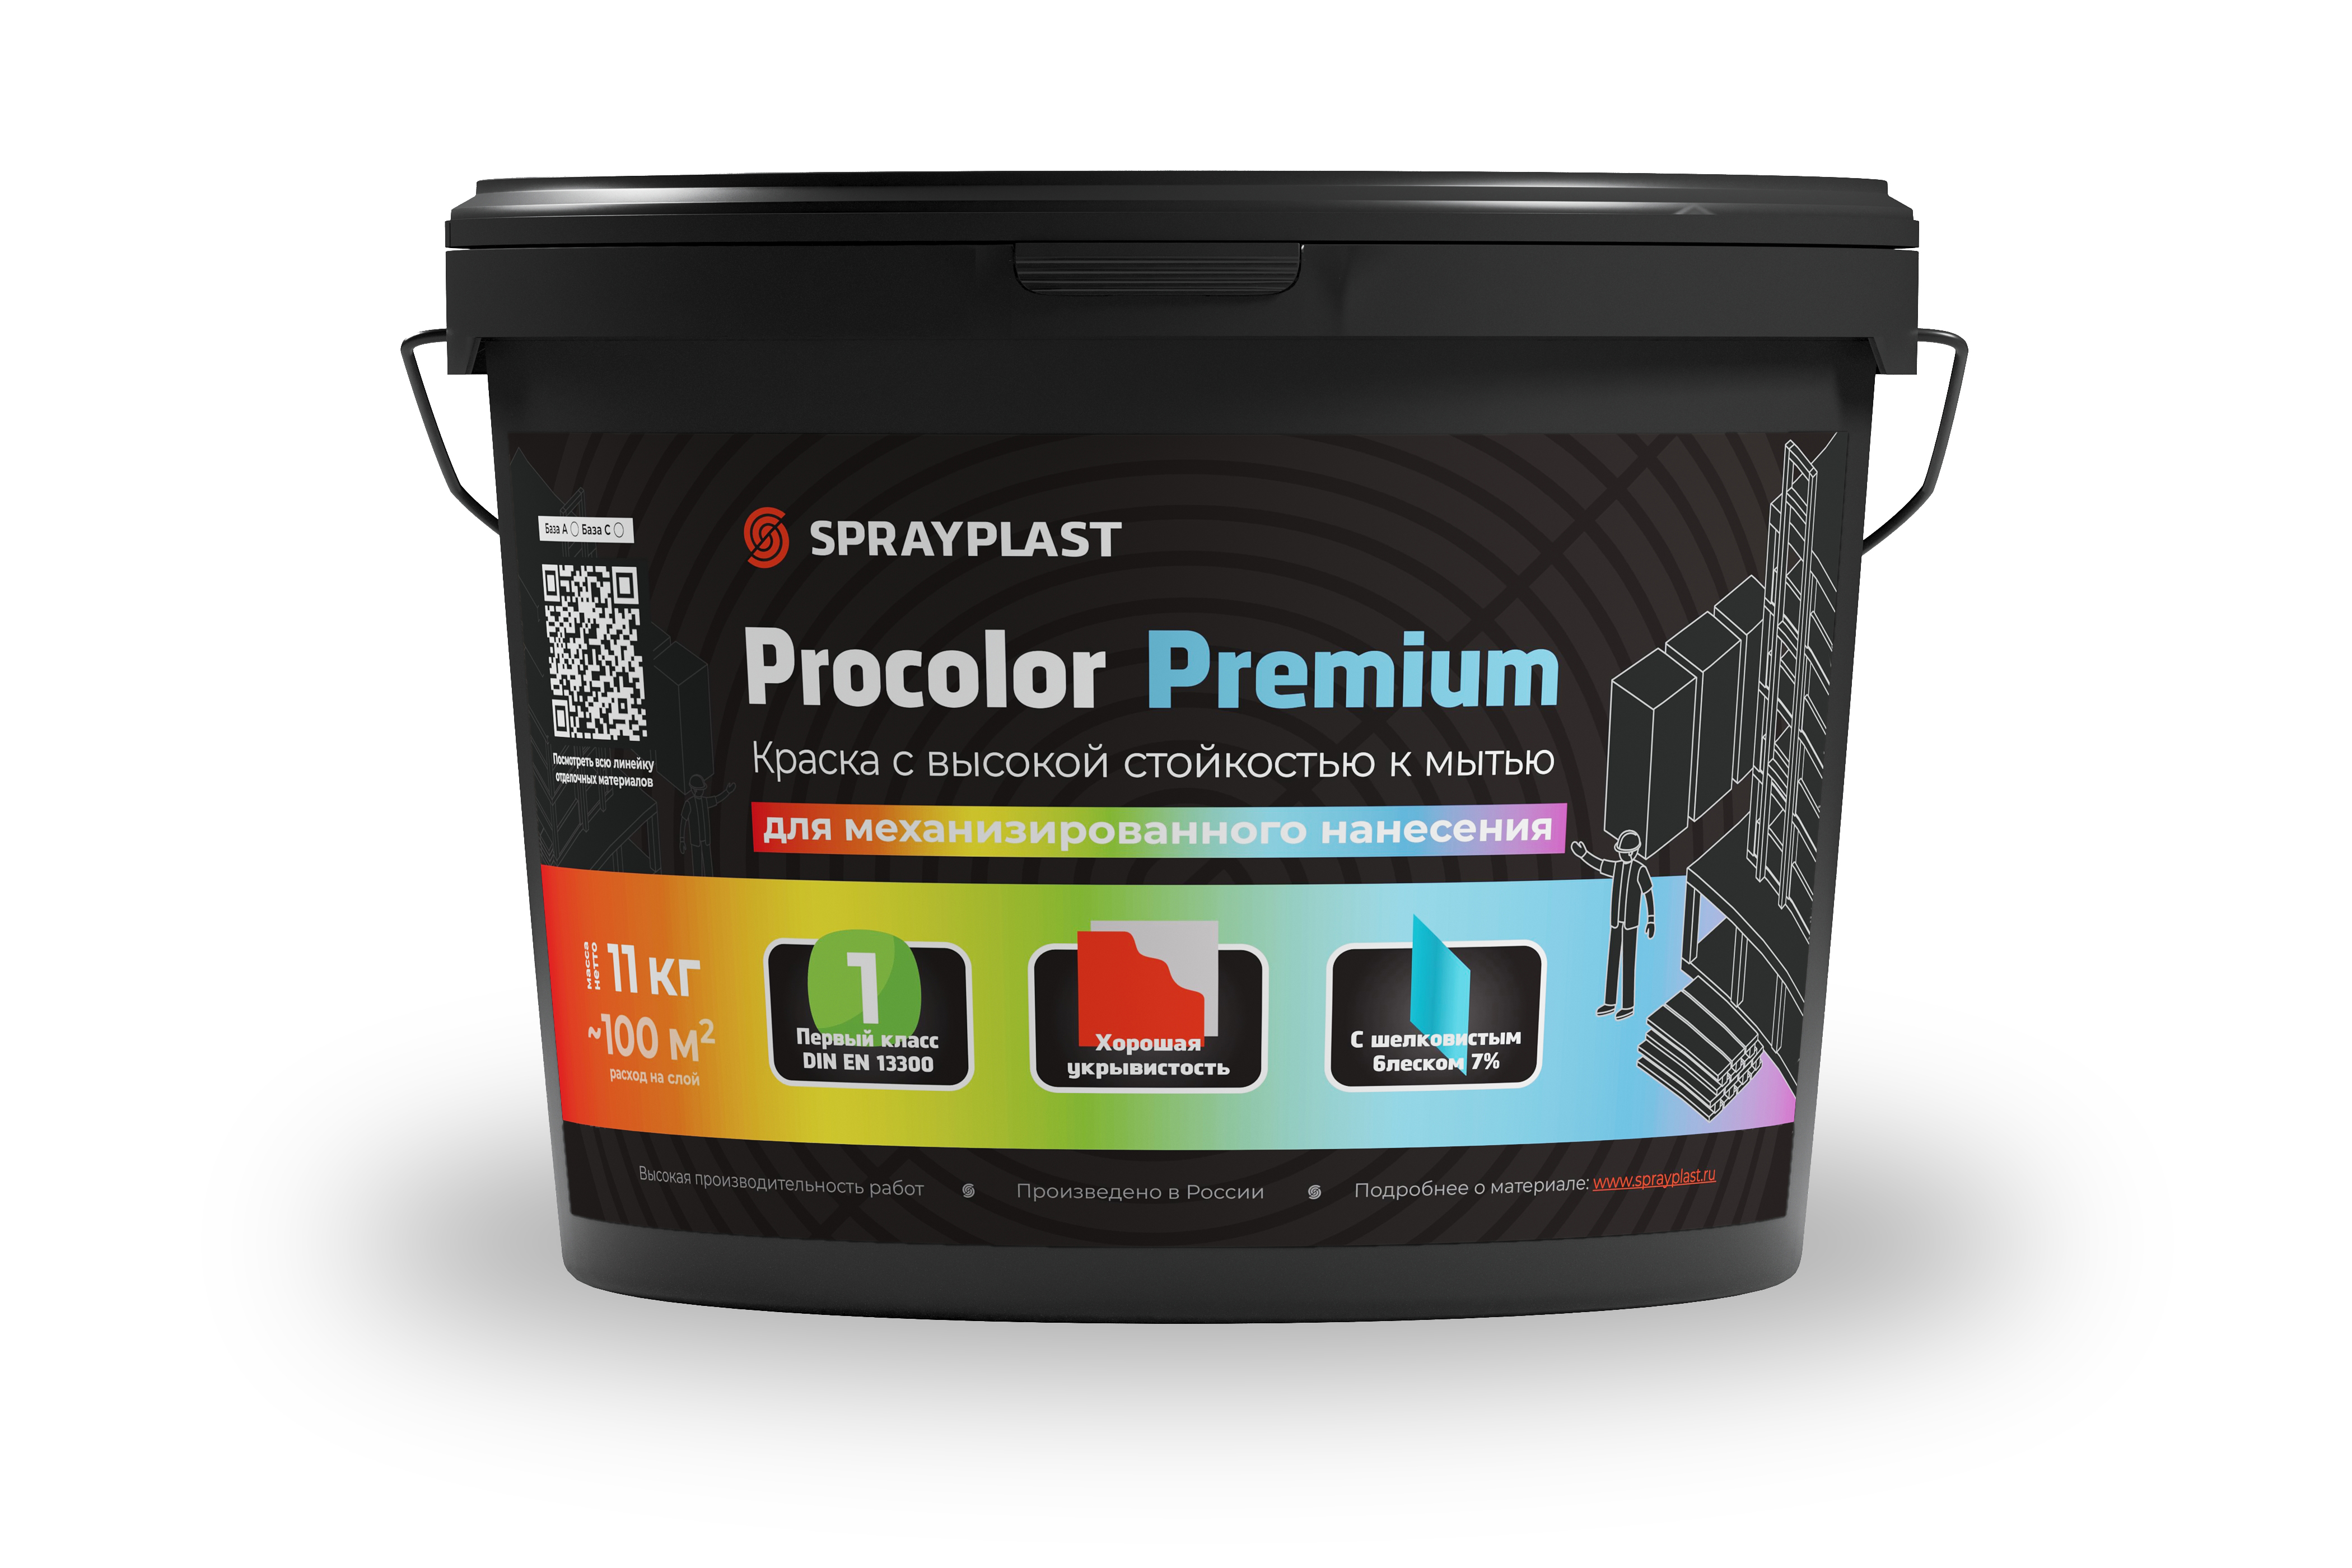 Procolor Premium